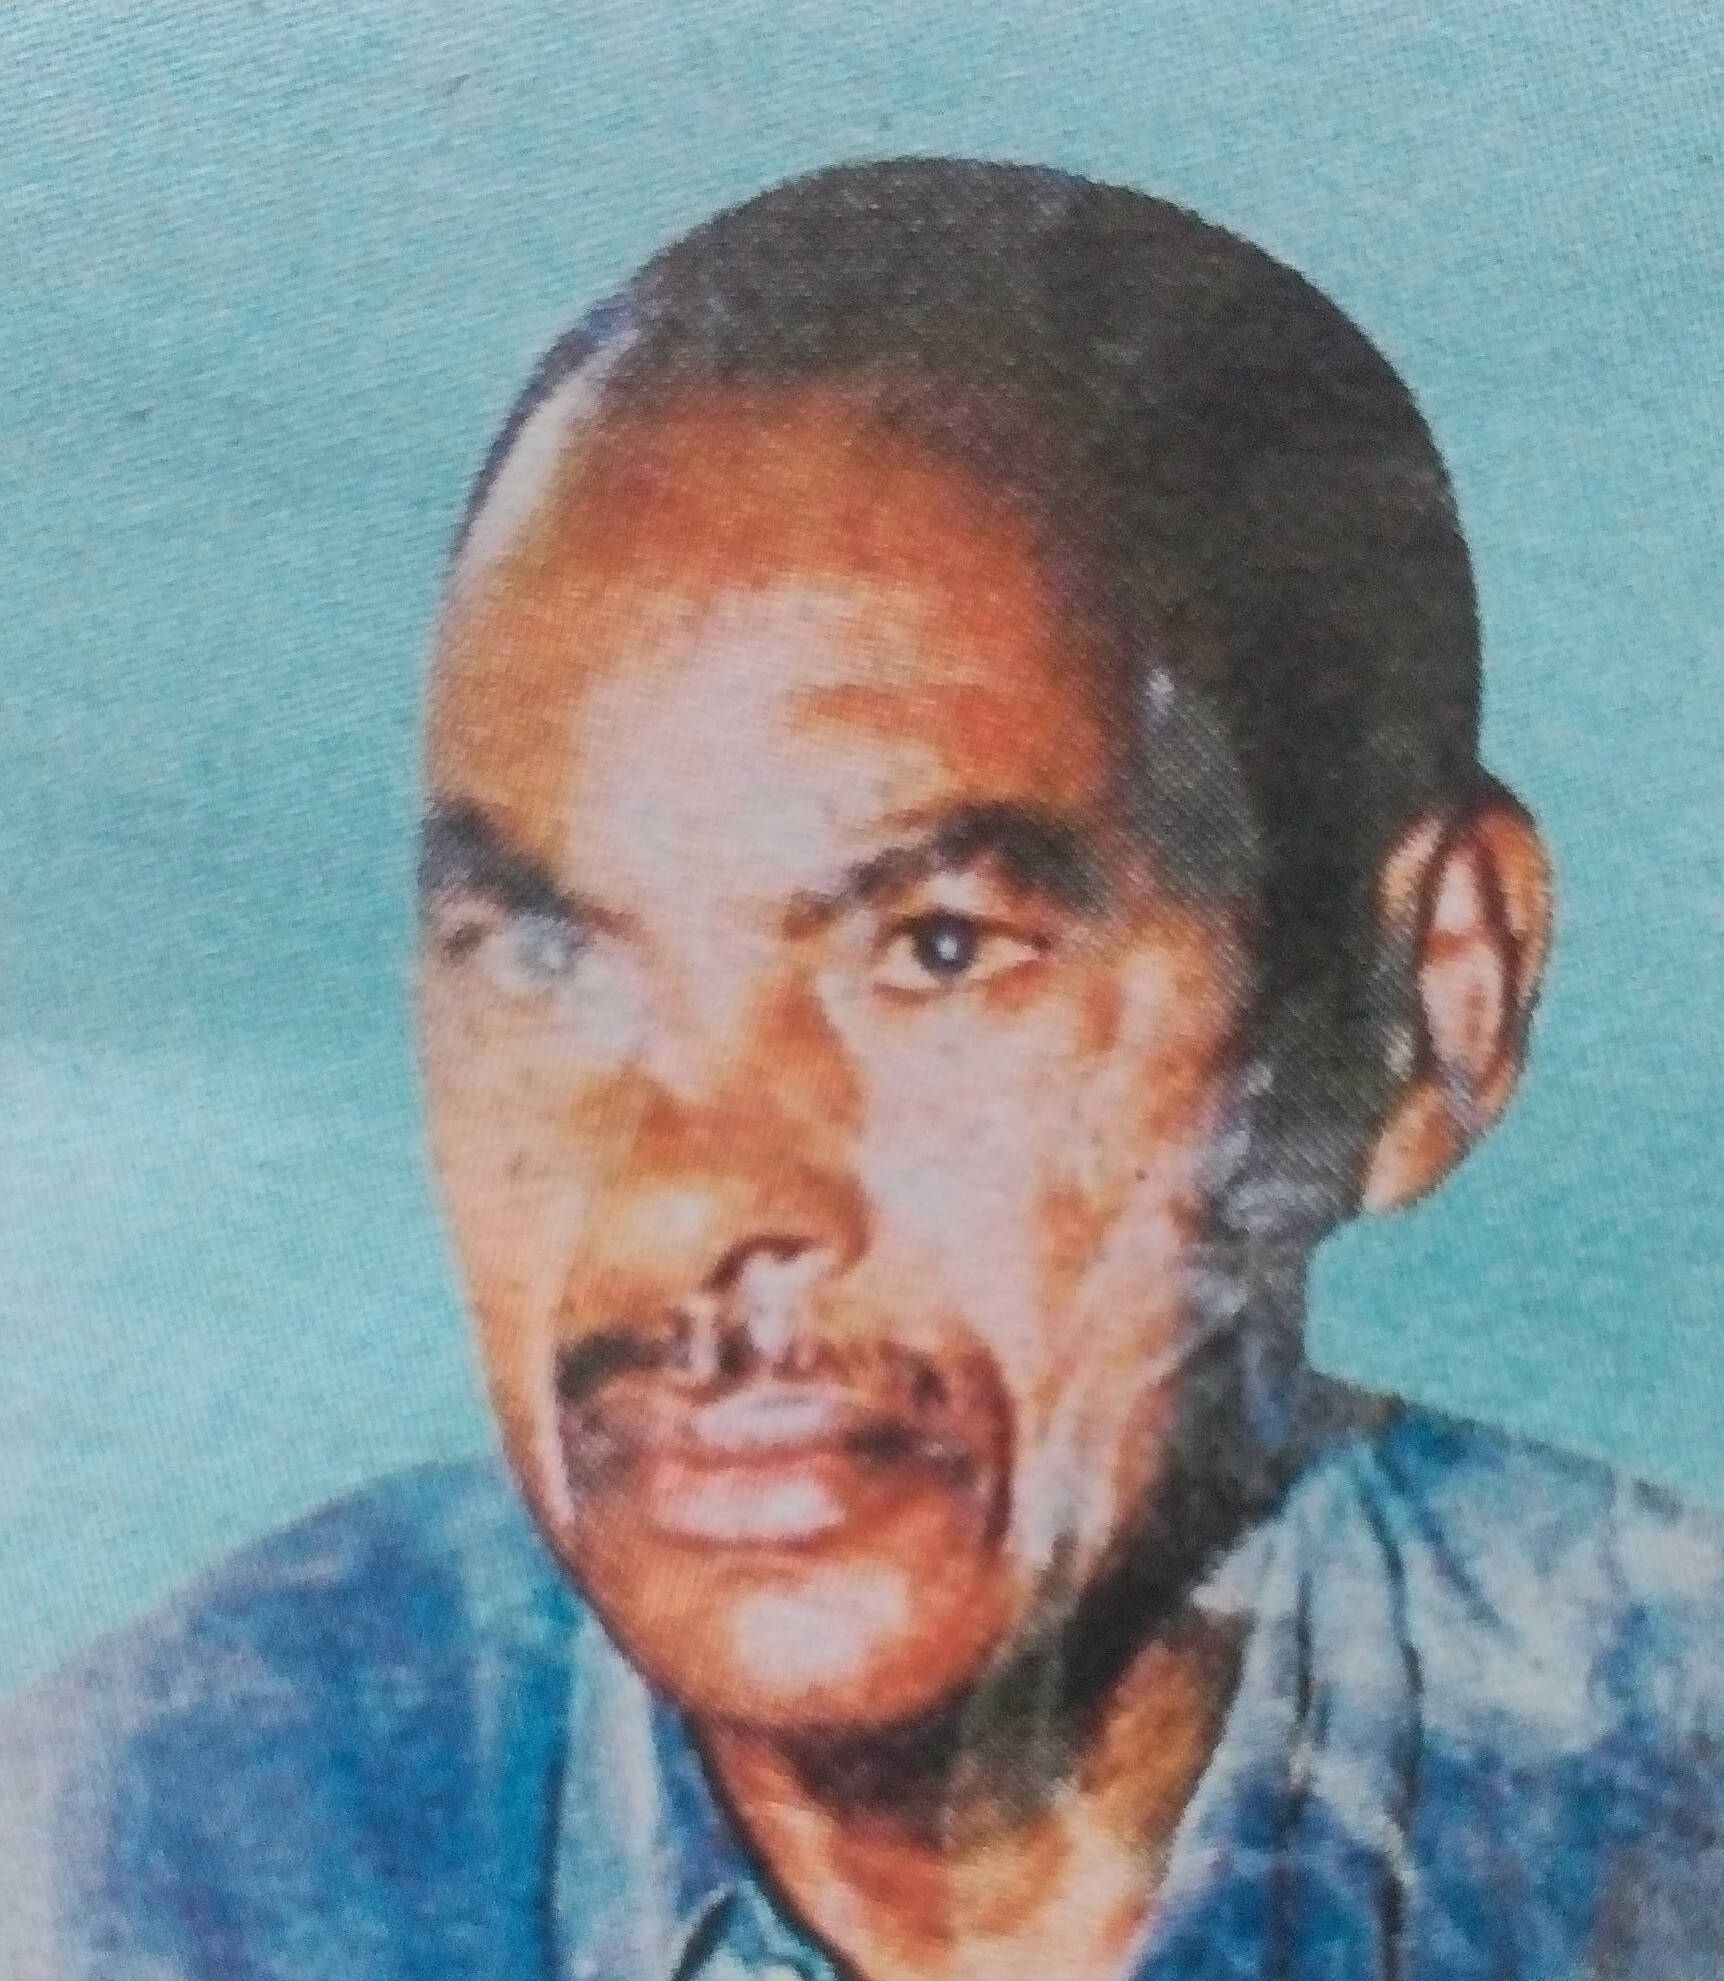 Obituary Image of Joseph Musyimi Manzi 1937-31/3/2017